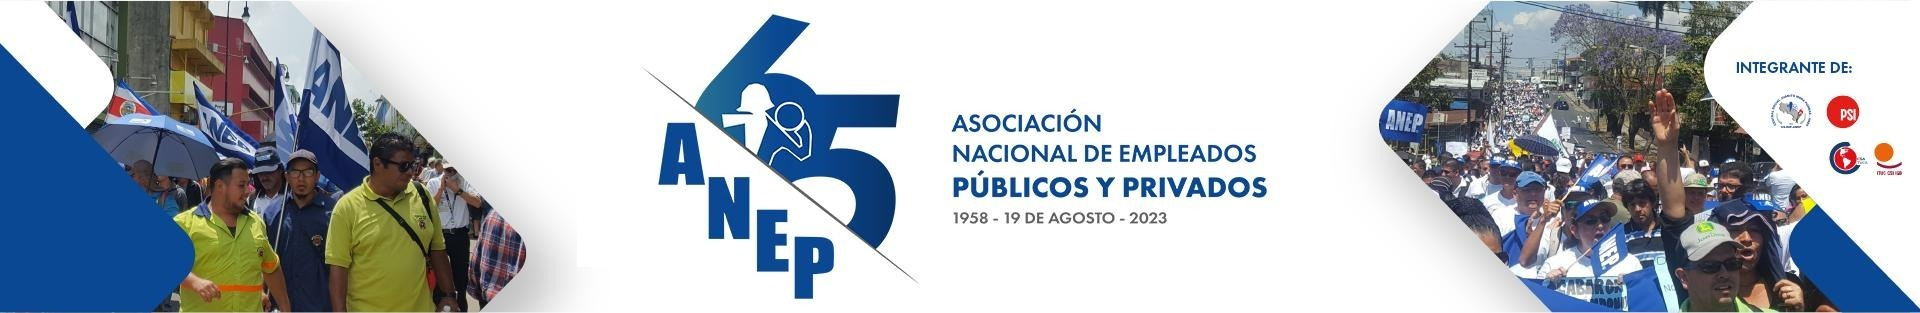 Asociación Nacional de Empleados Públicos y Privados